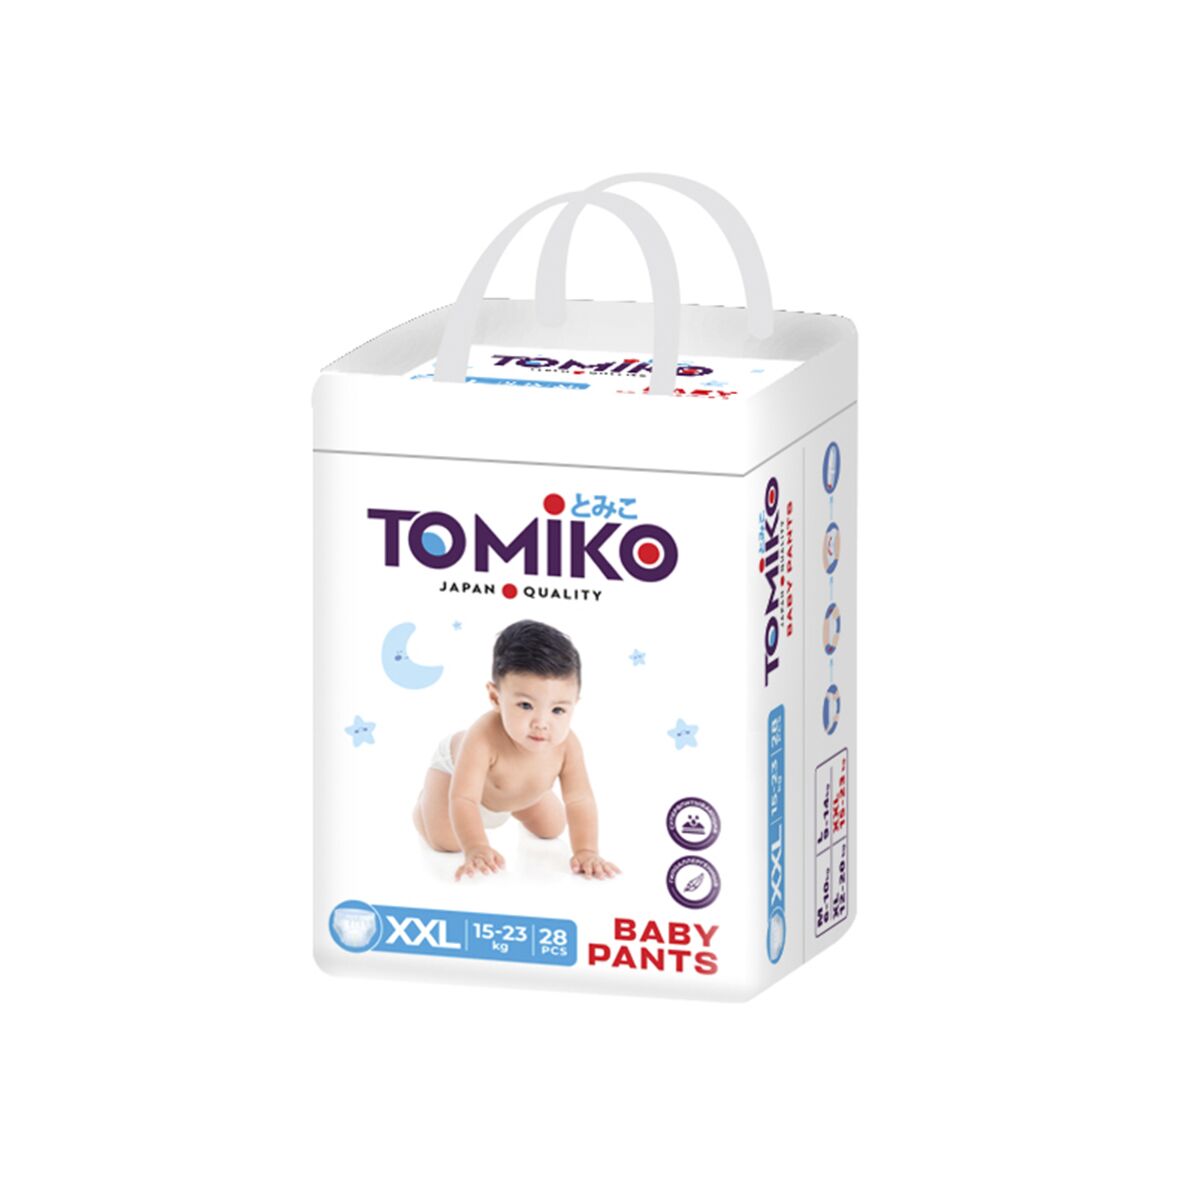 Tomiko: Подгузники-трусики детские размер XXL (15-23 кг), 28 шт: купить по  доступной цене в Алматы, Казахстане | Интернет-магазин Marwin